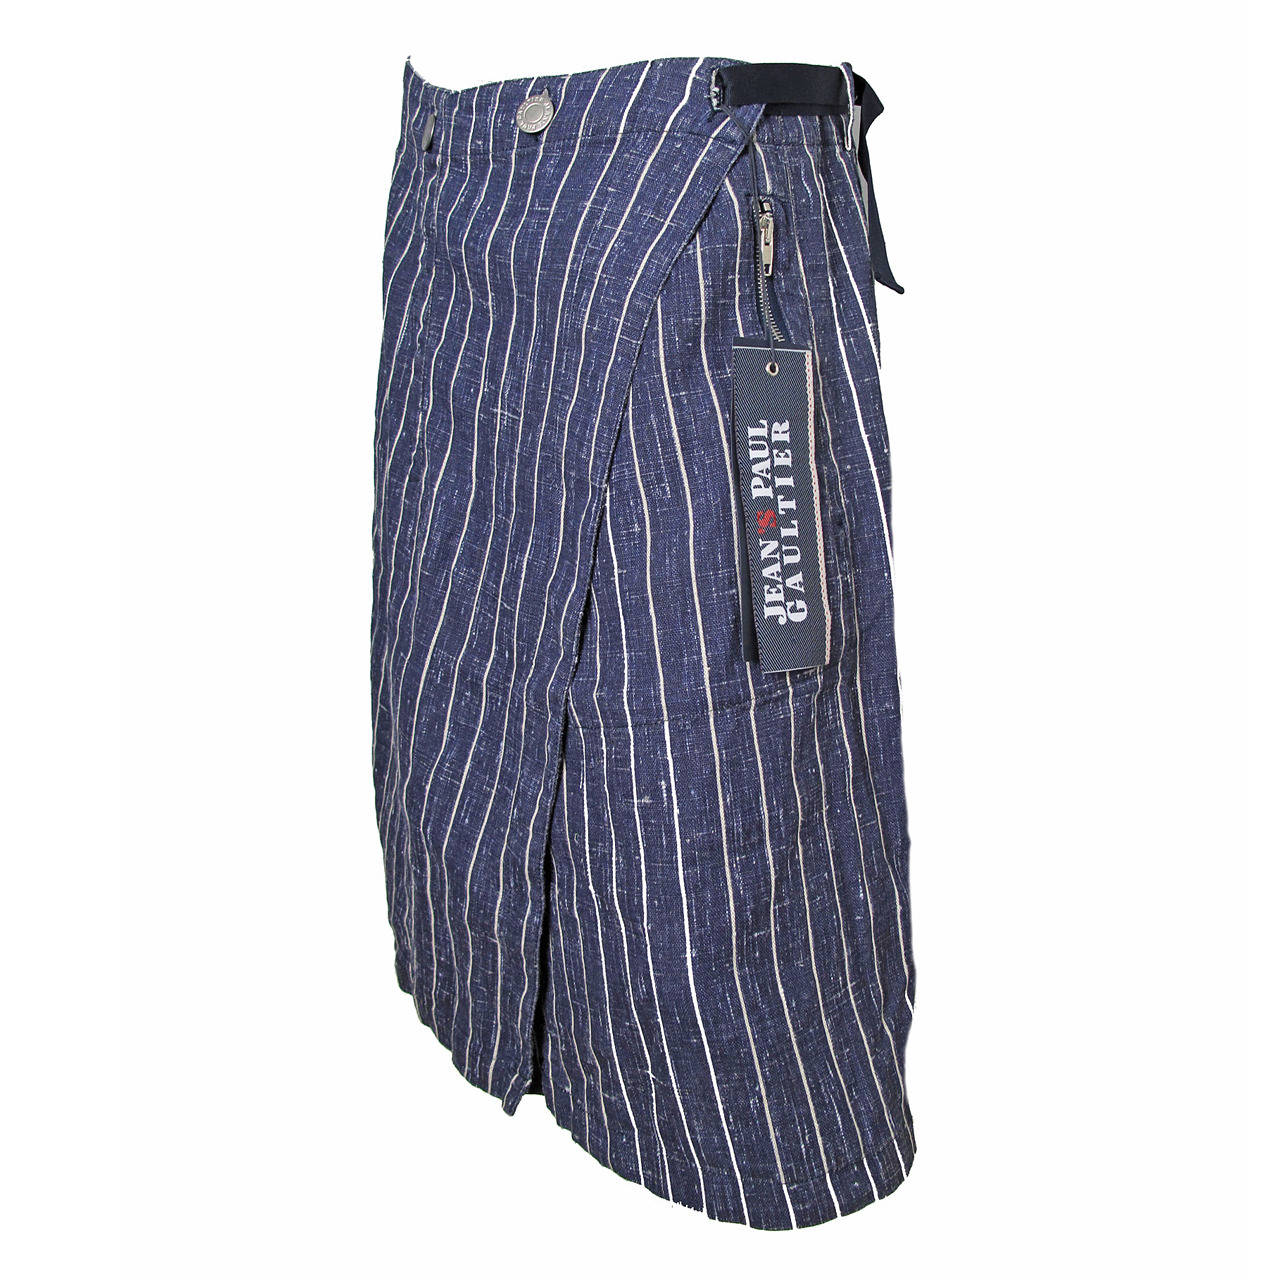 Jeans Paul Gaultier Linen Skirt